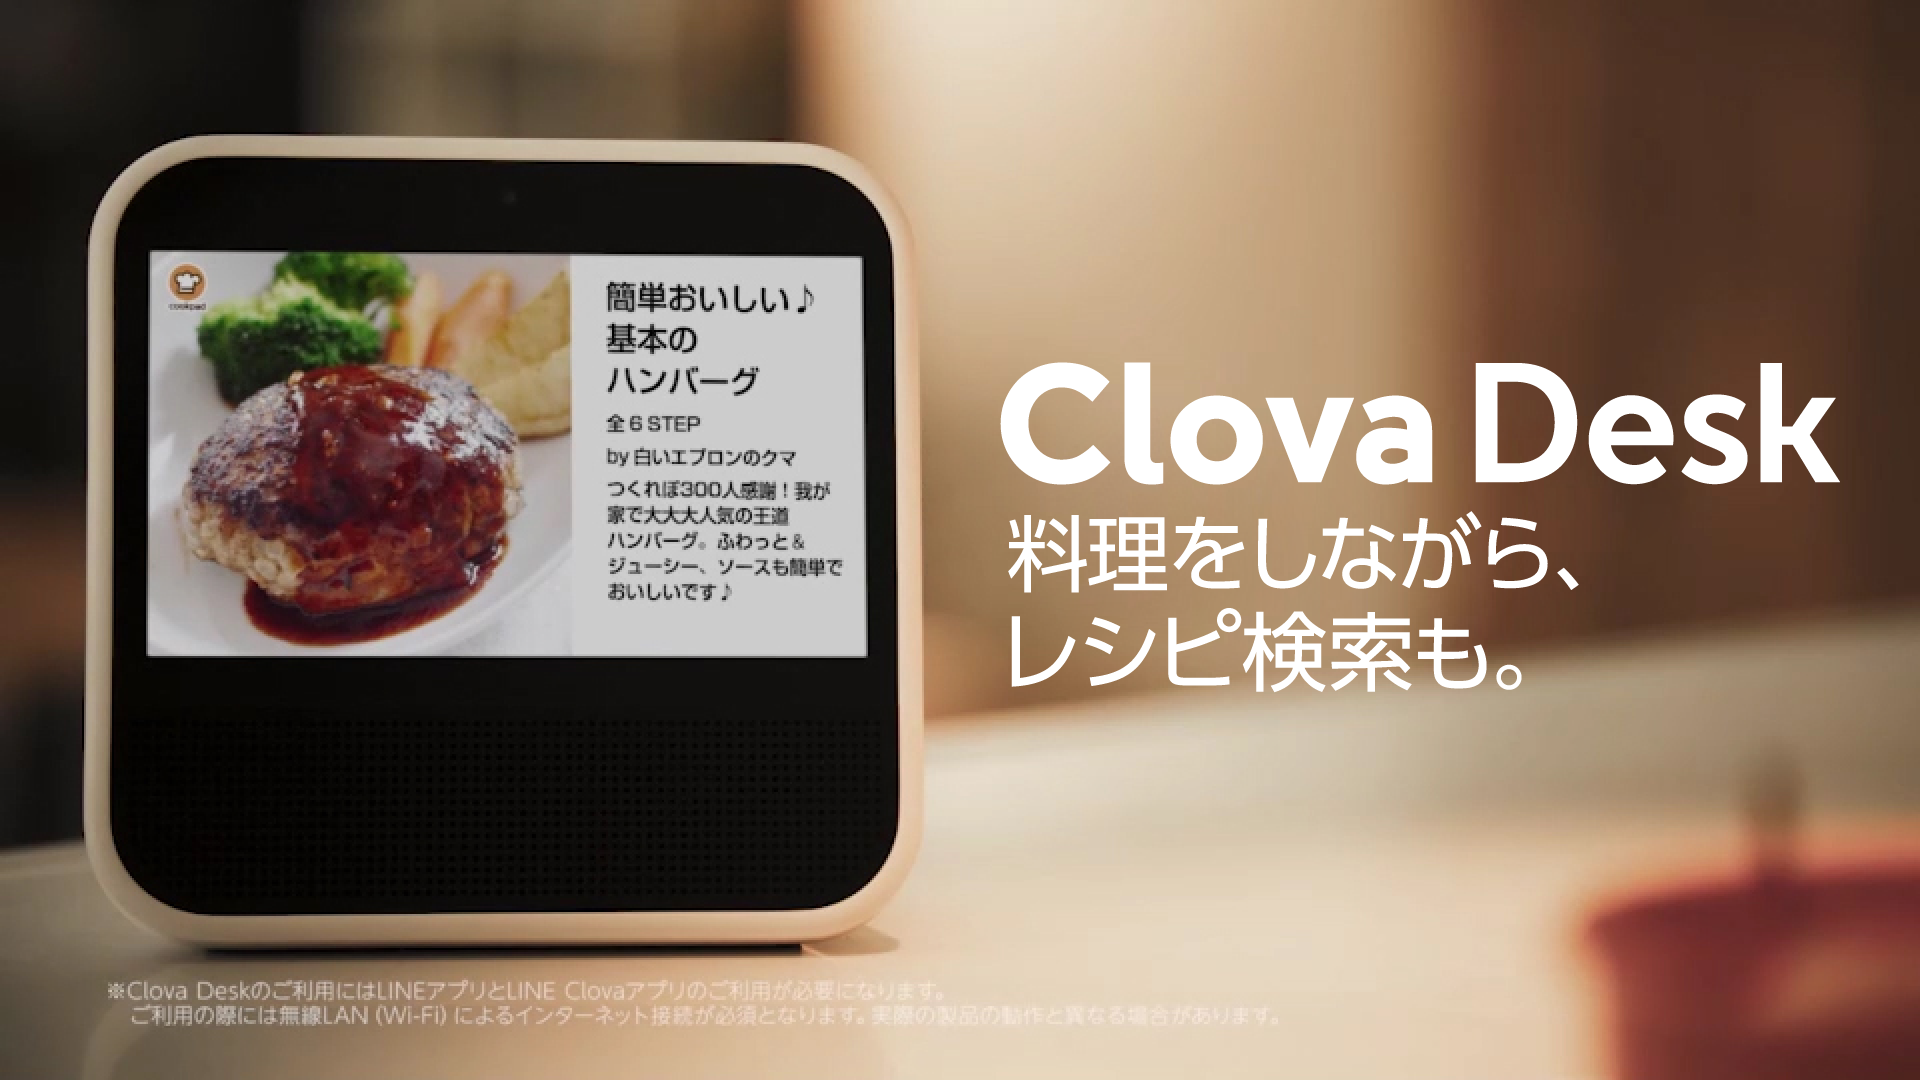 クックパッド Lineのスマートディスプレイ Clova Desk にスキルを提供開始 クックパッドのプレスリリース